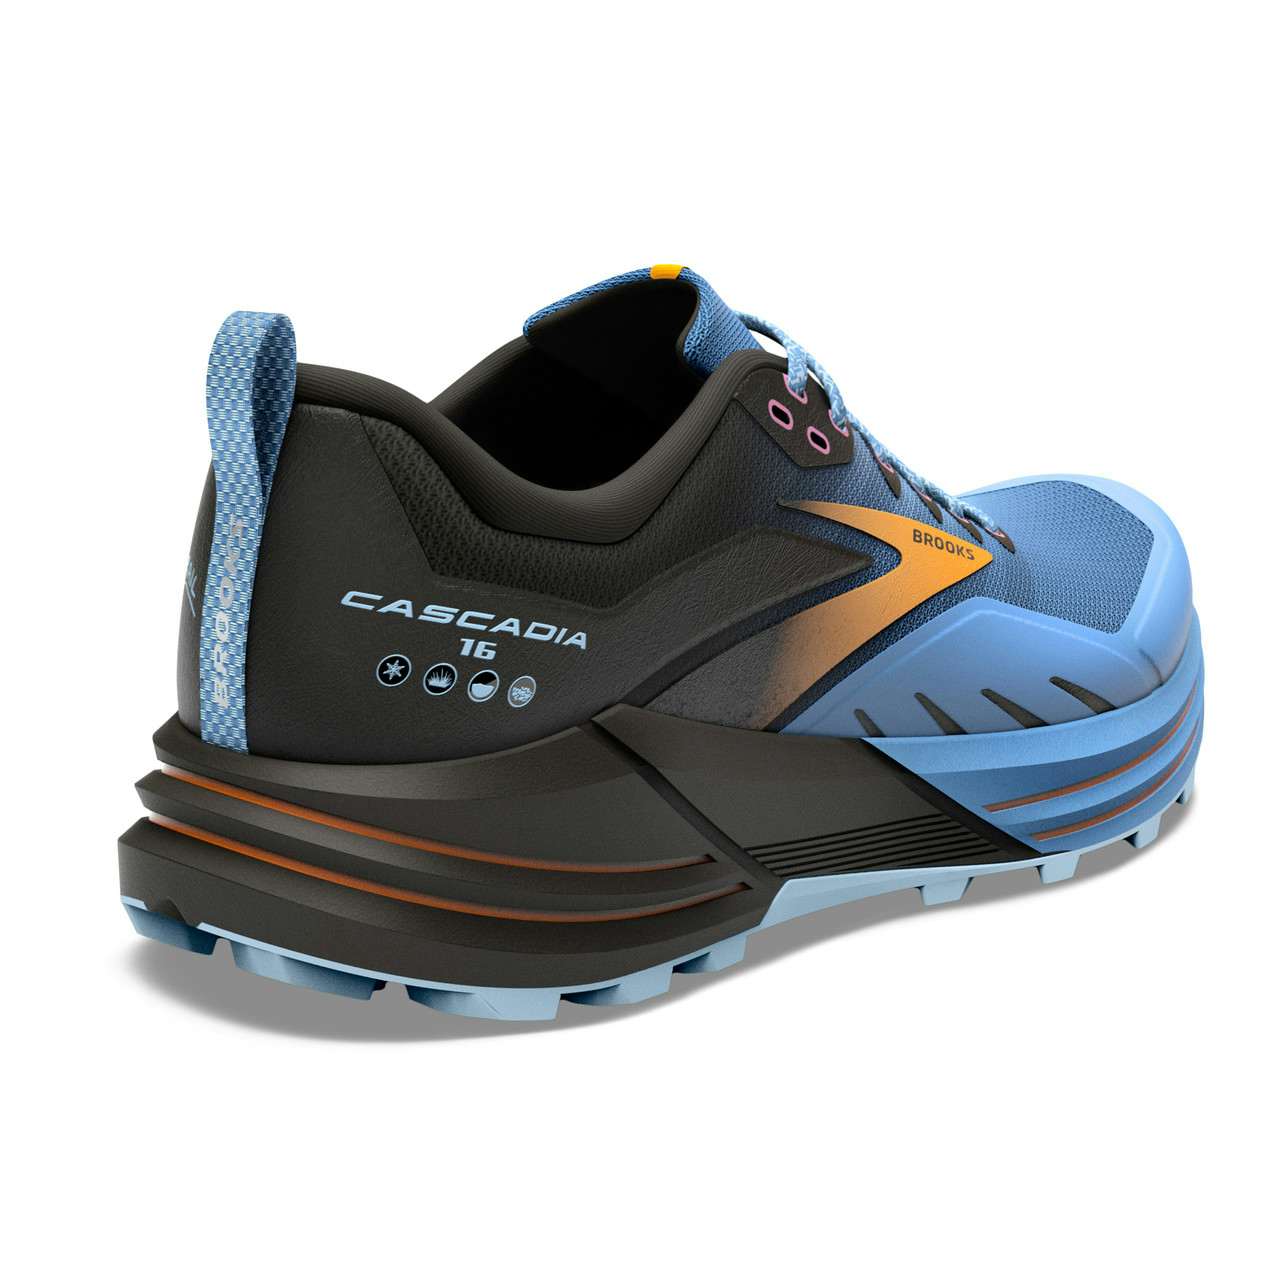 Chaussures de course en sentier Cascadia 16 Bleu/Noir/Jaune